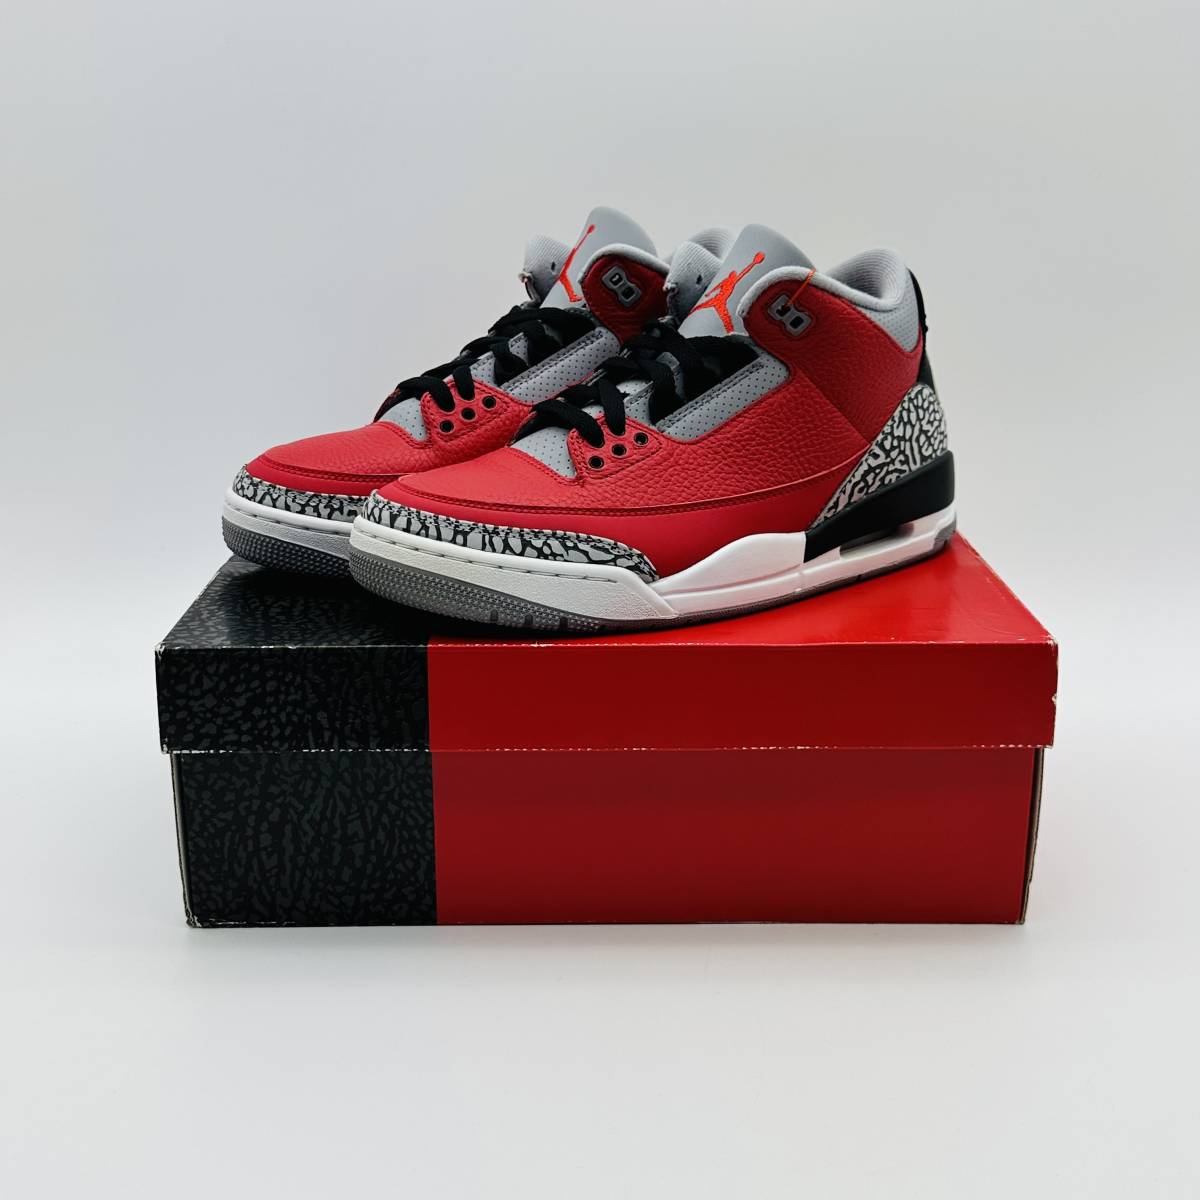 【新品未使用】Nike Air Jordan 3 Retro SE Unite Fire Red CK5692-600 ナイキ エアジョーダン3 レトロ SE ユナイト ファイヤー レッド